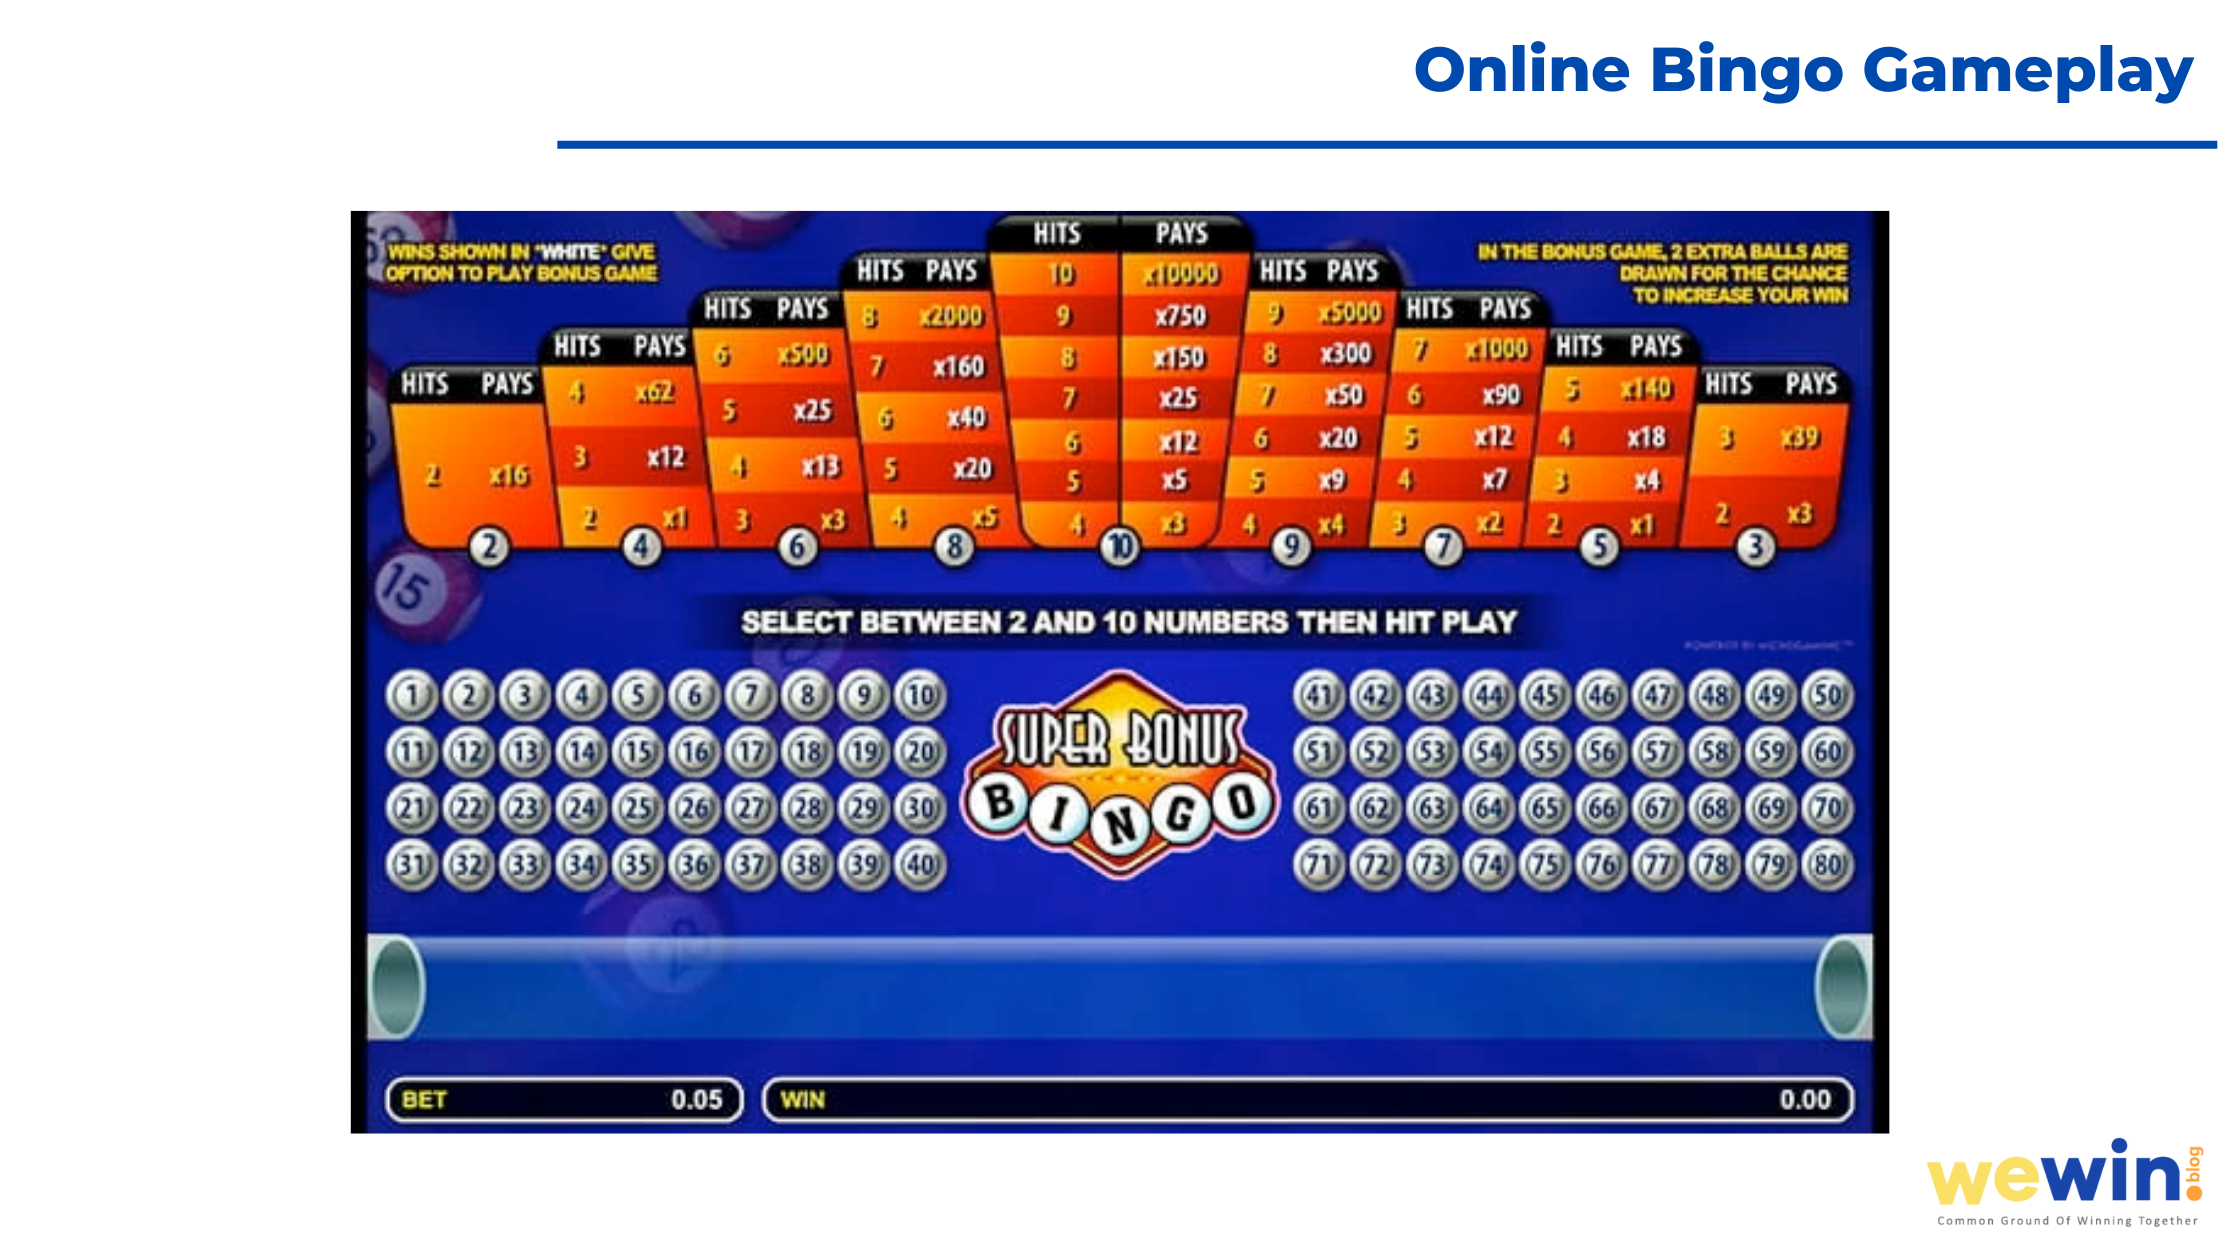 Online Bingo Gameplay